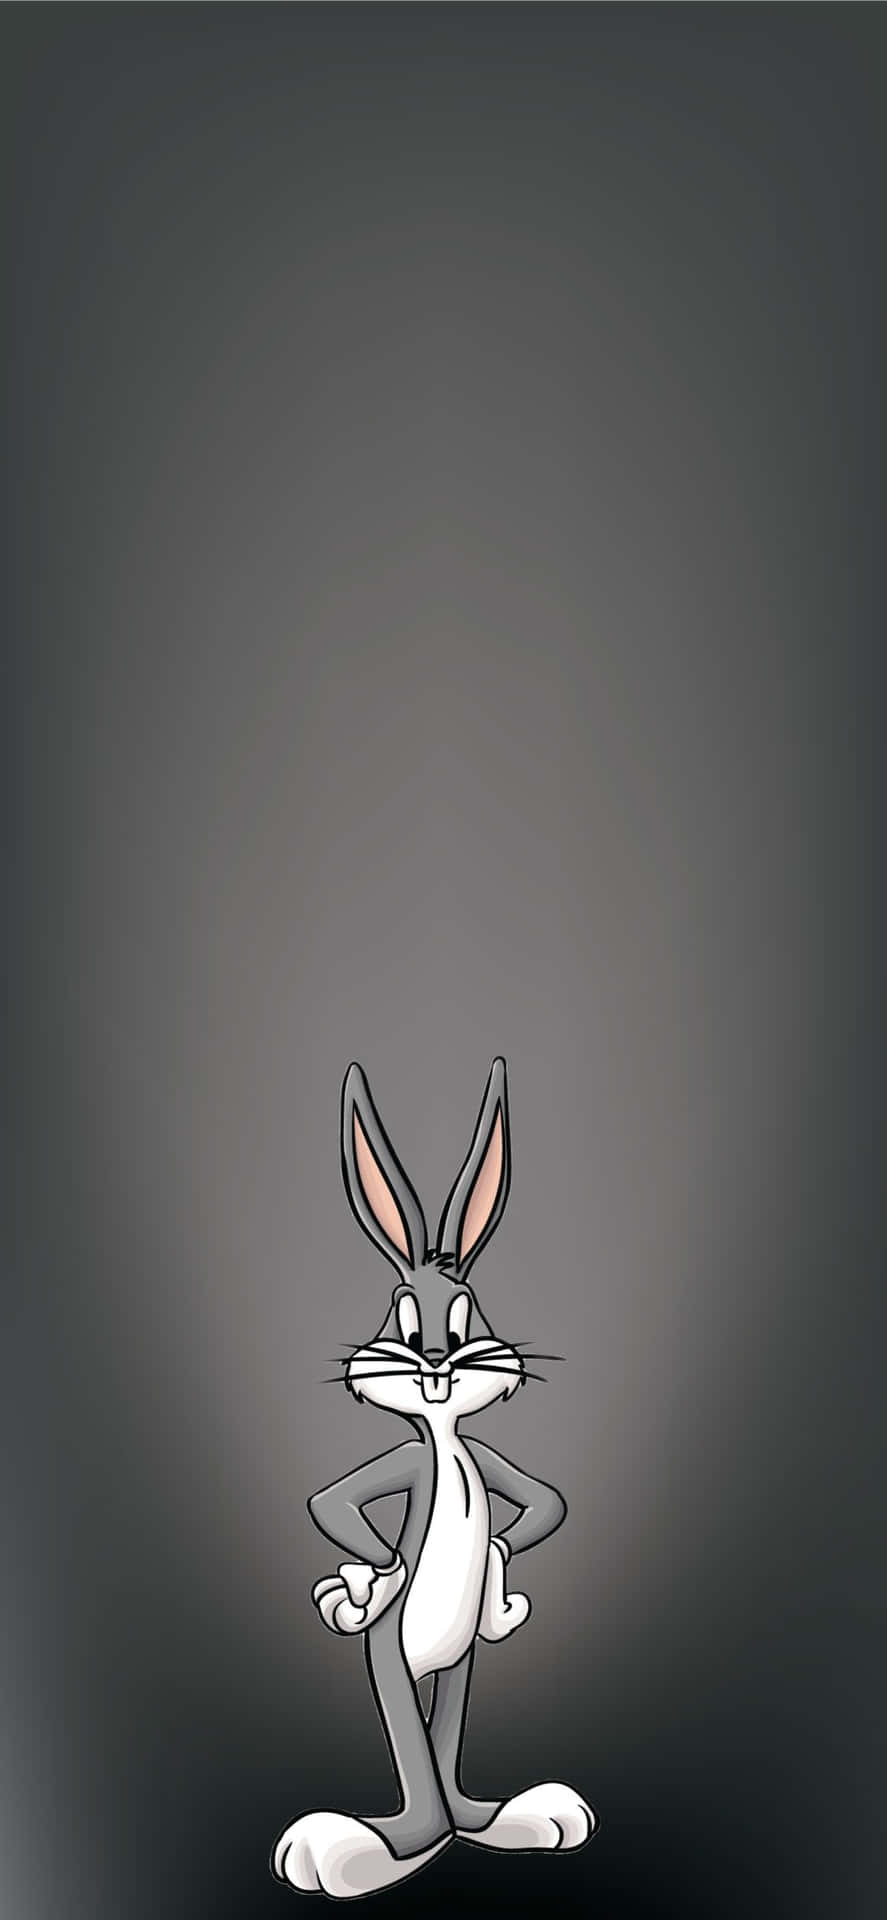 A Cartoon Rabbit Standing On A Dark Background Wallpaper